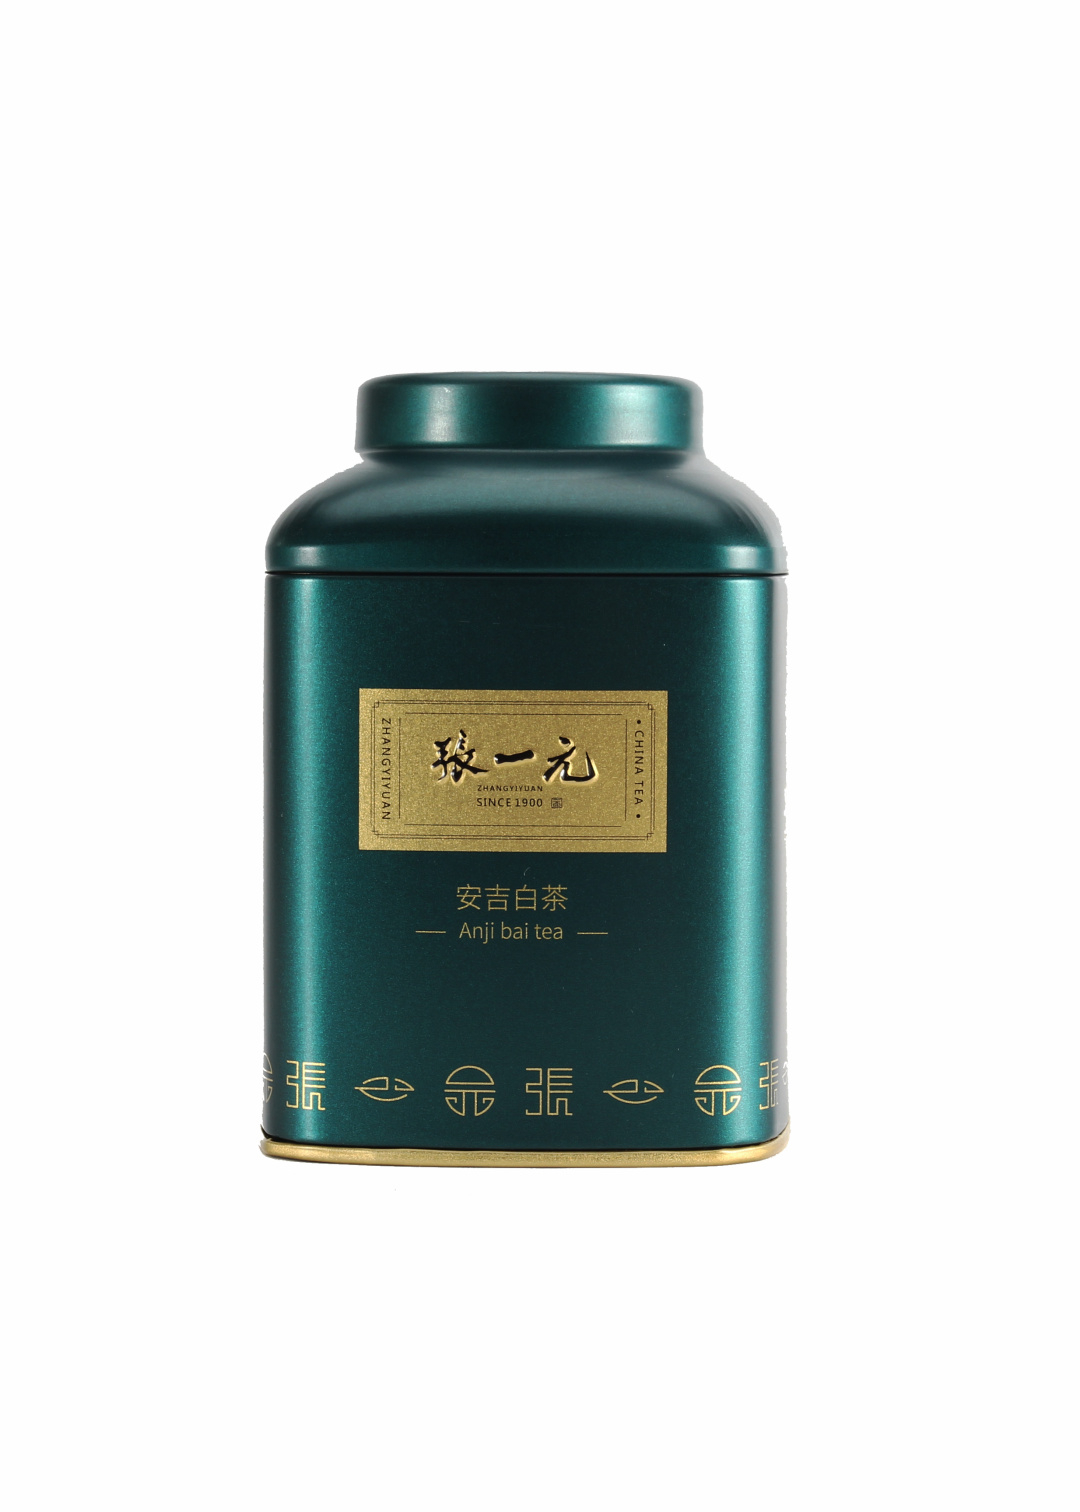 【绿茶展卖季 包邮】张一元茶叶 经典系列 绿茶 安吉白茶 桶装 40g